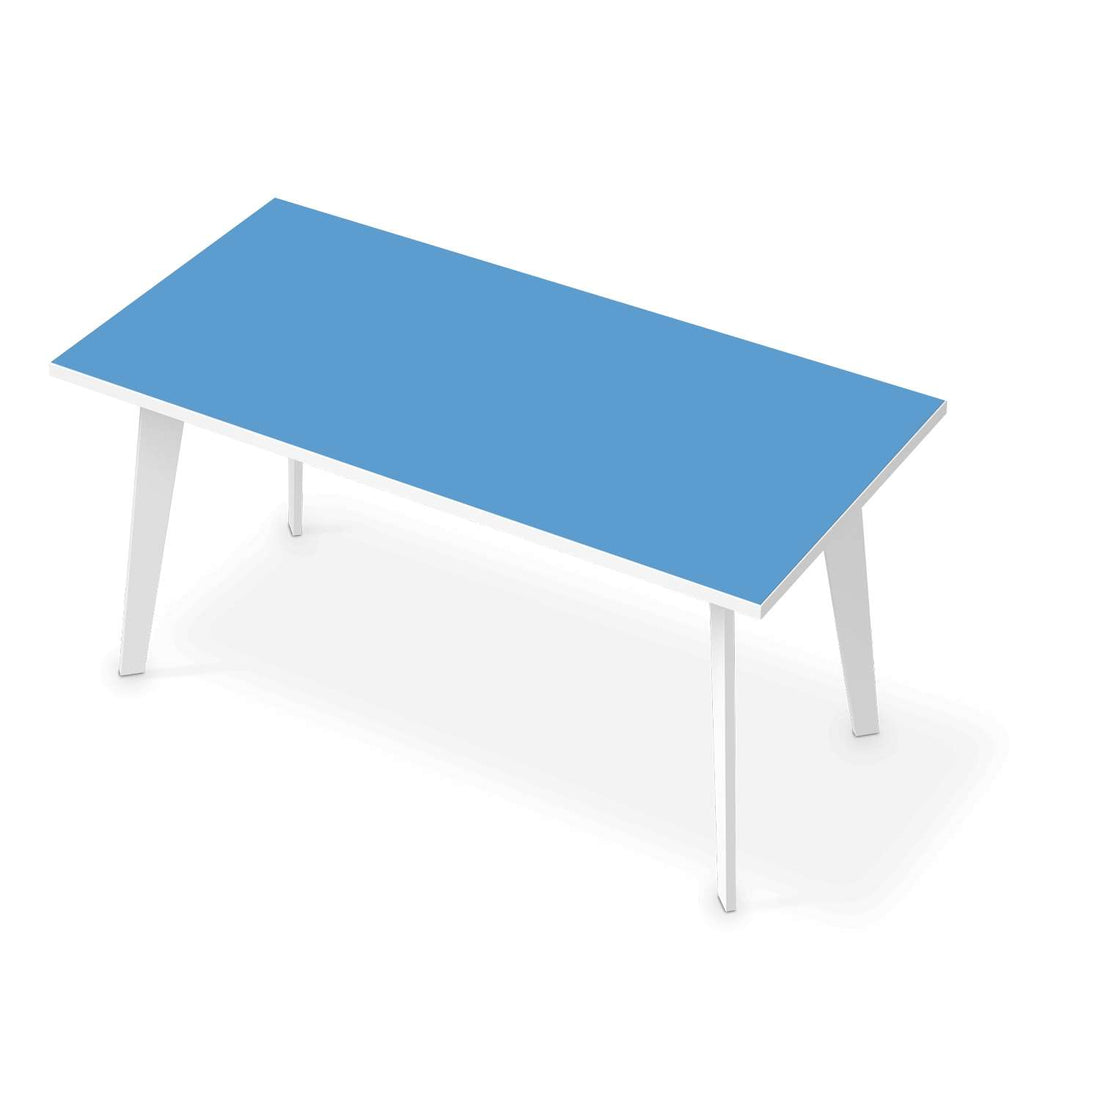 Tischfolie Blau Light - Esszimmer Tisch 160x80 cm